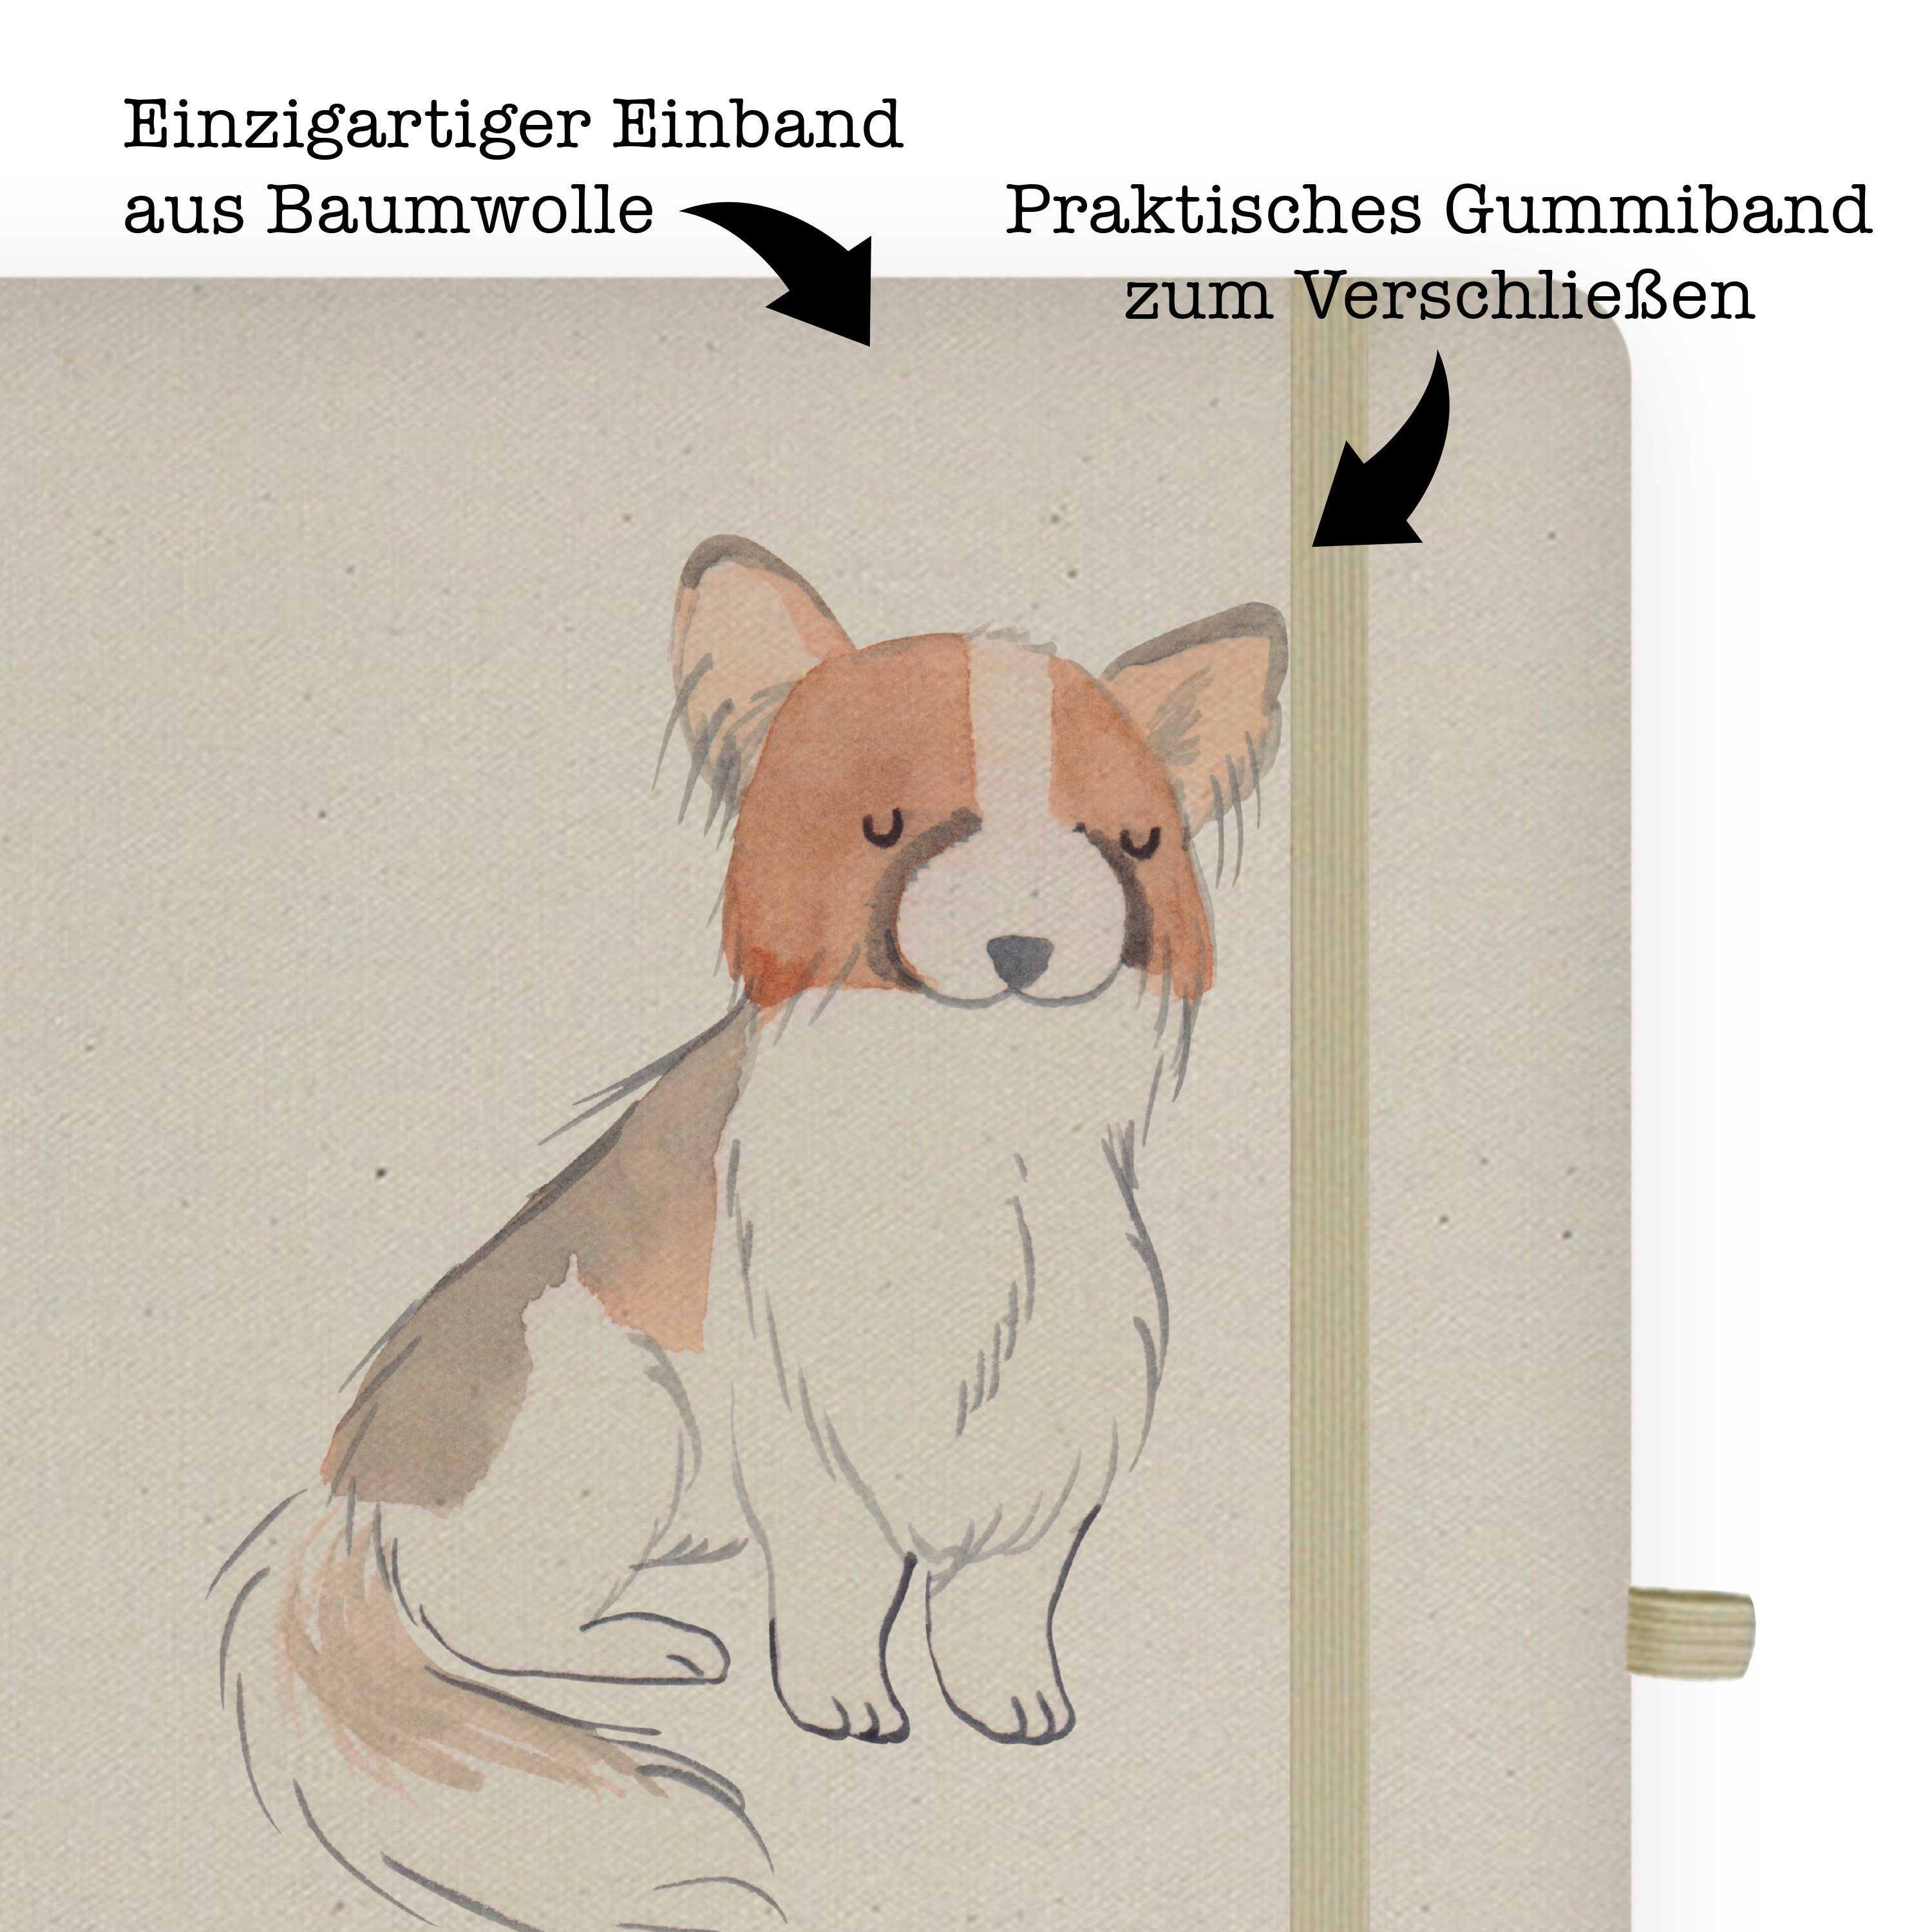 Mr. & Geschenk, Panda Transparent Mrs. Mrs. Notizbuch Lebensretter - Panda Mr. - Journal, Papillon & Kontinentale